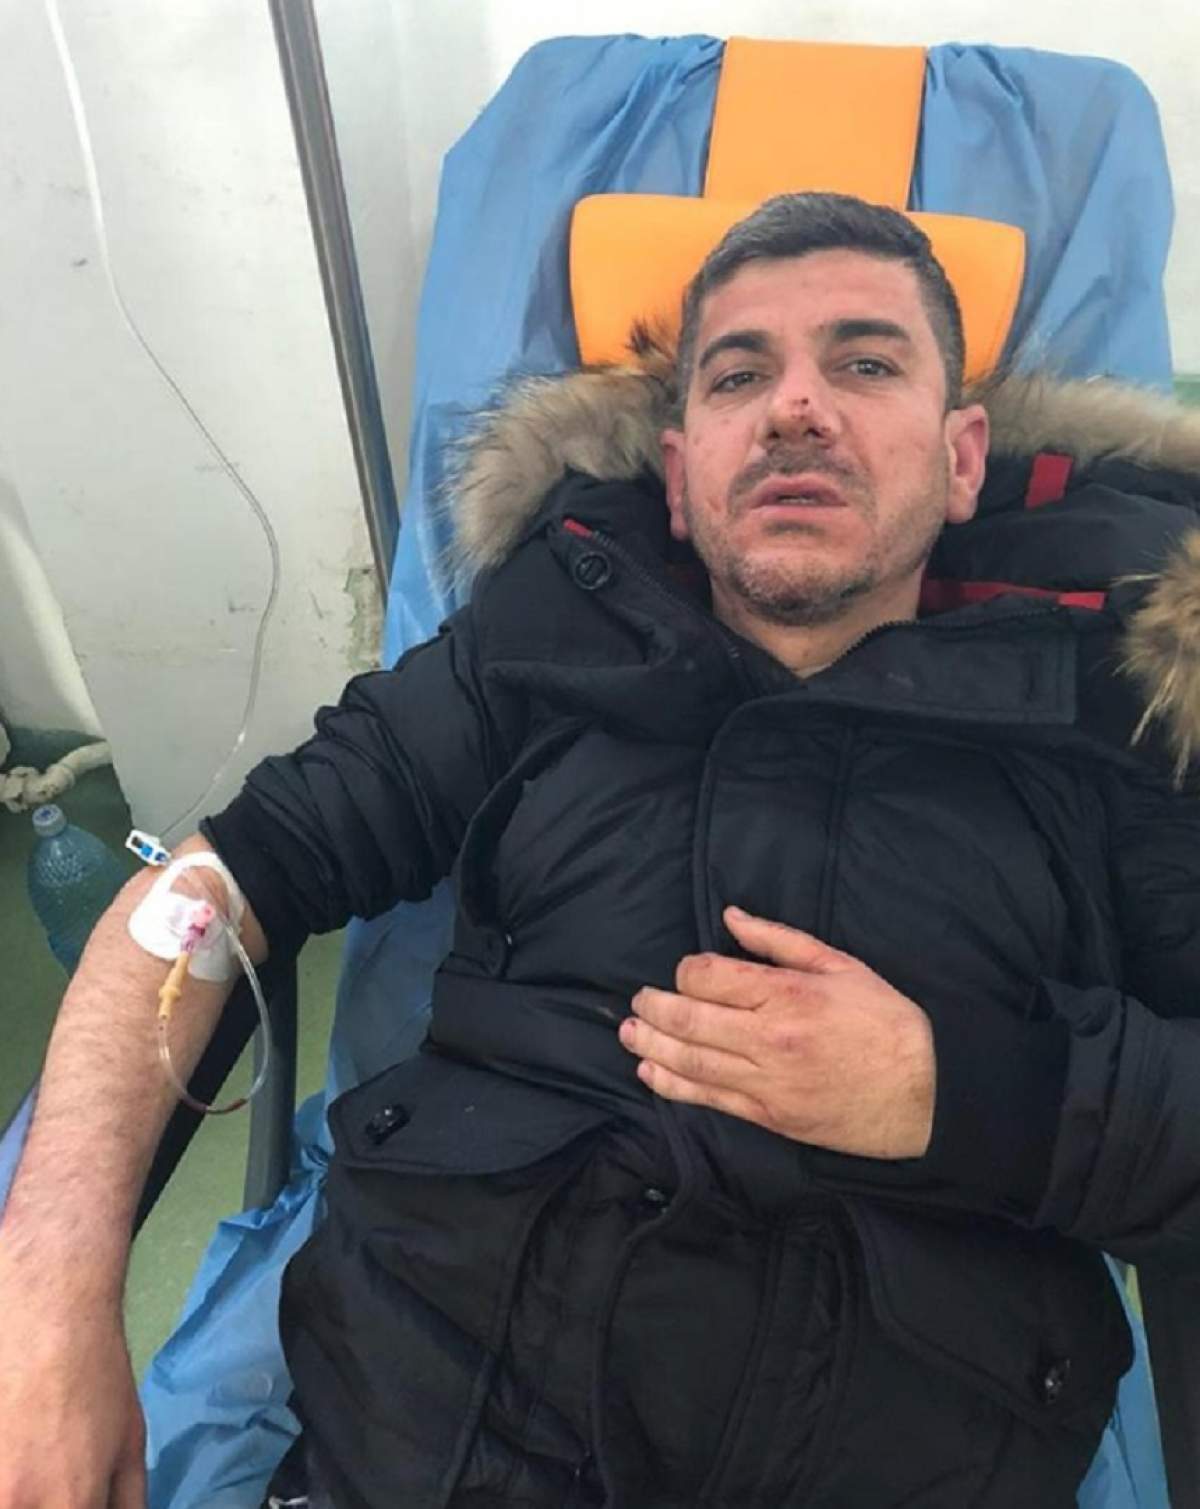 Unul dintre angajaţii clubului unde Găbiţă de la Buzău spune că a fost bătut face declaraţii şoc: "S-a împiedicat şi a căzut"